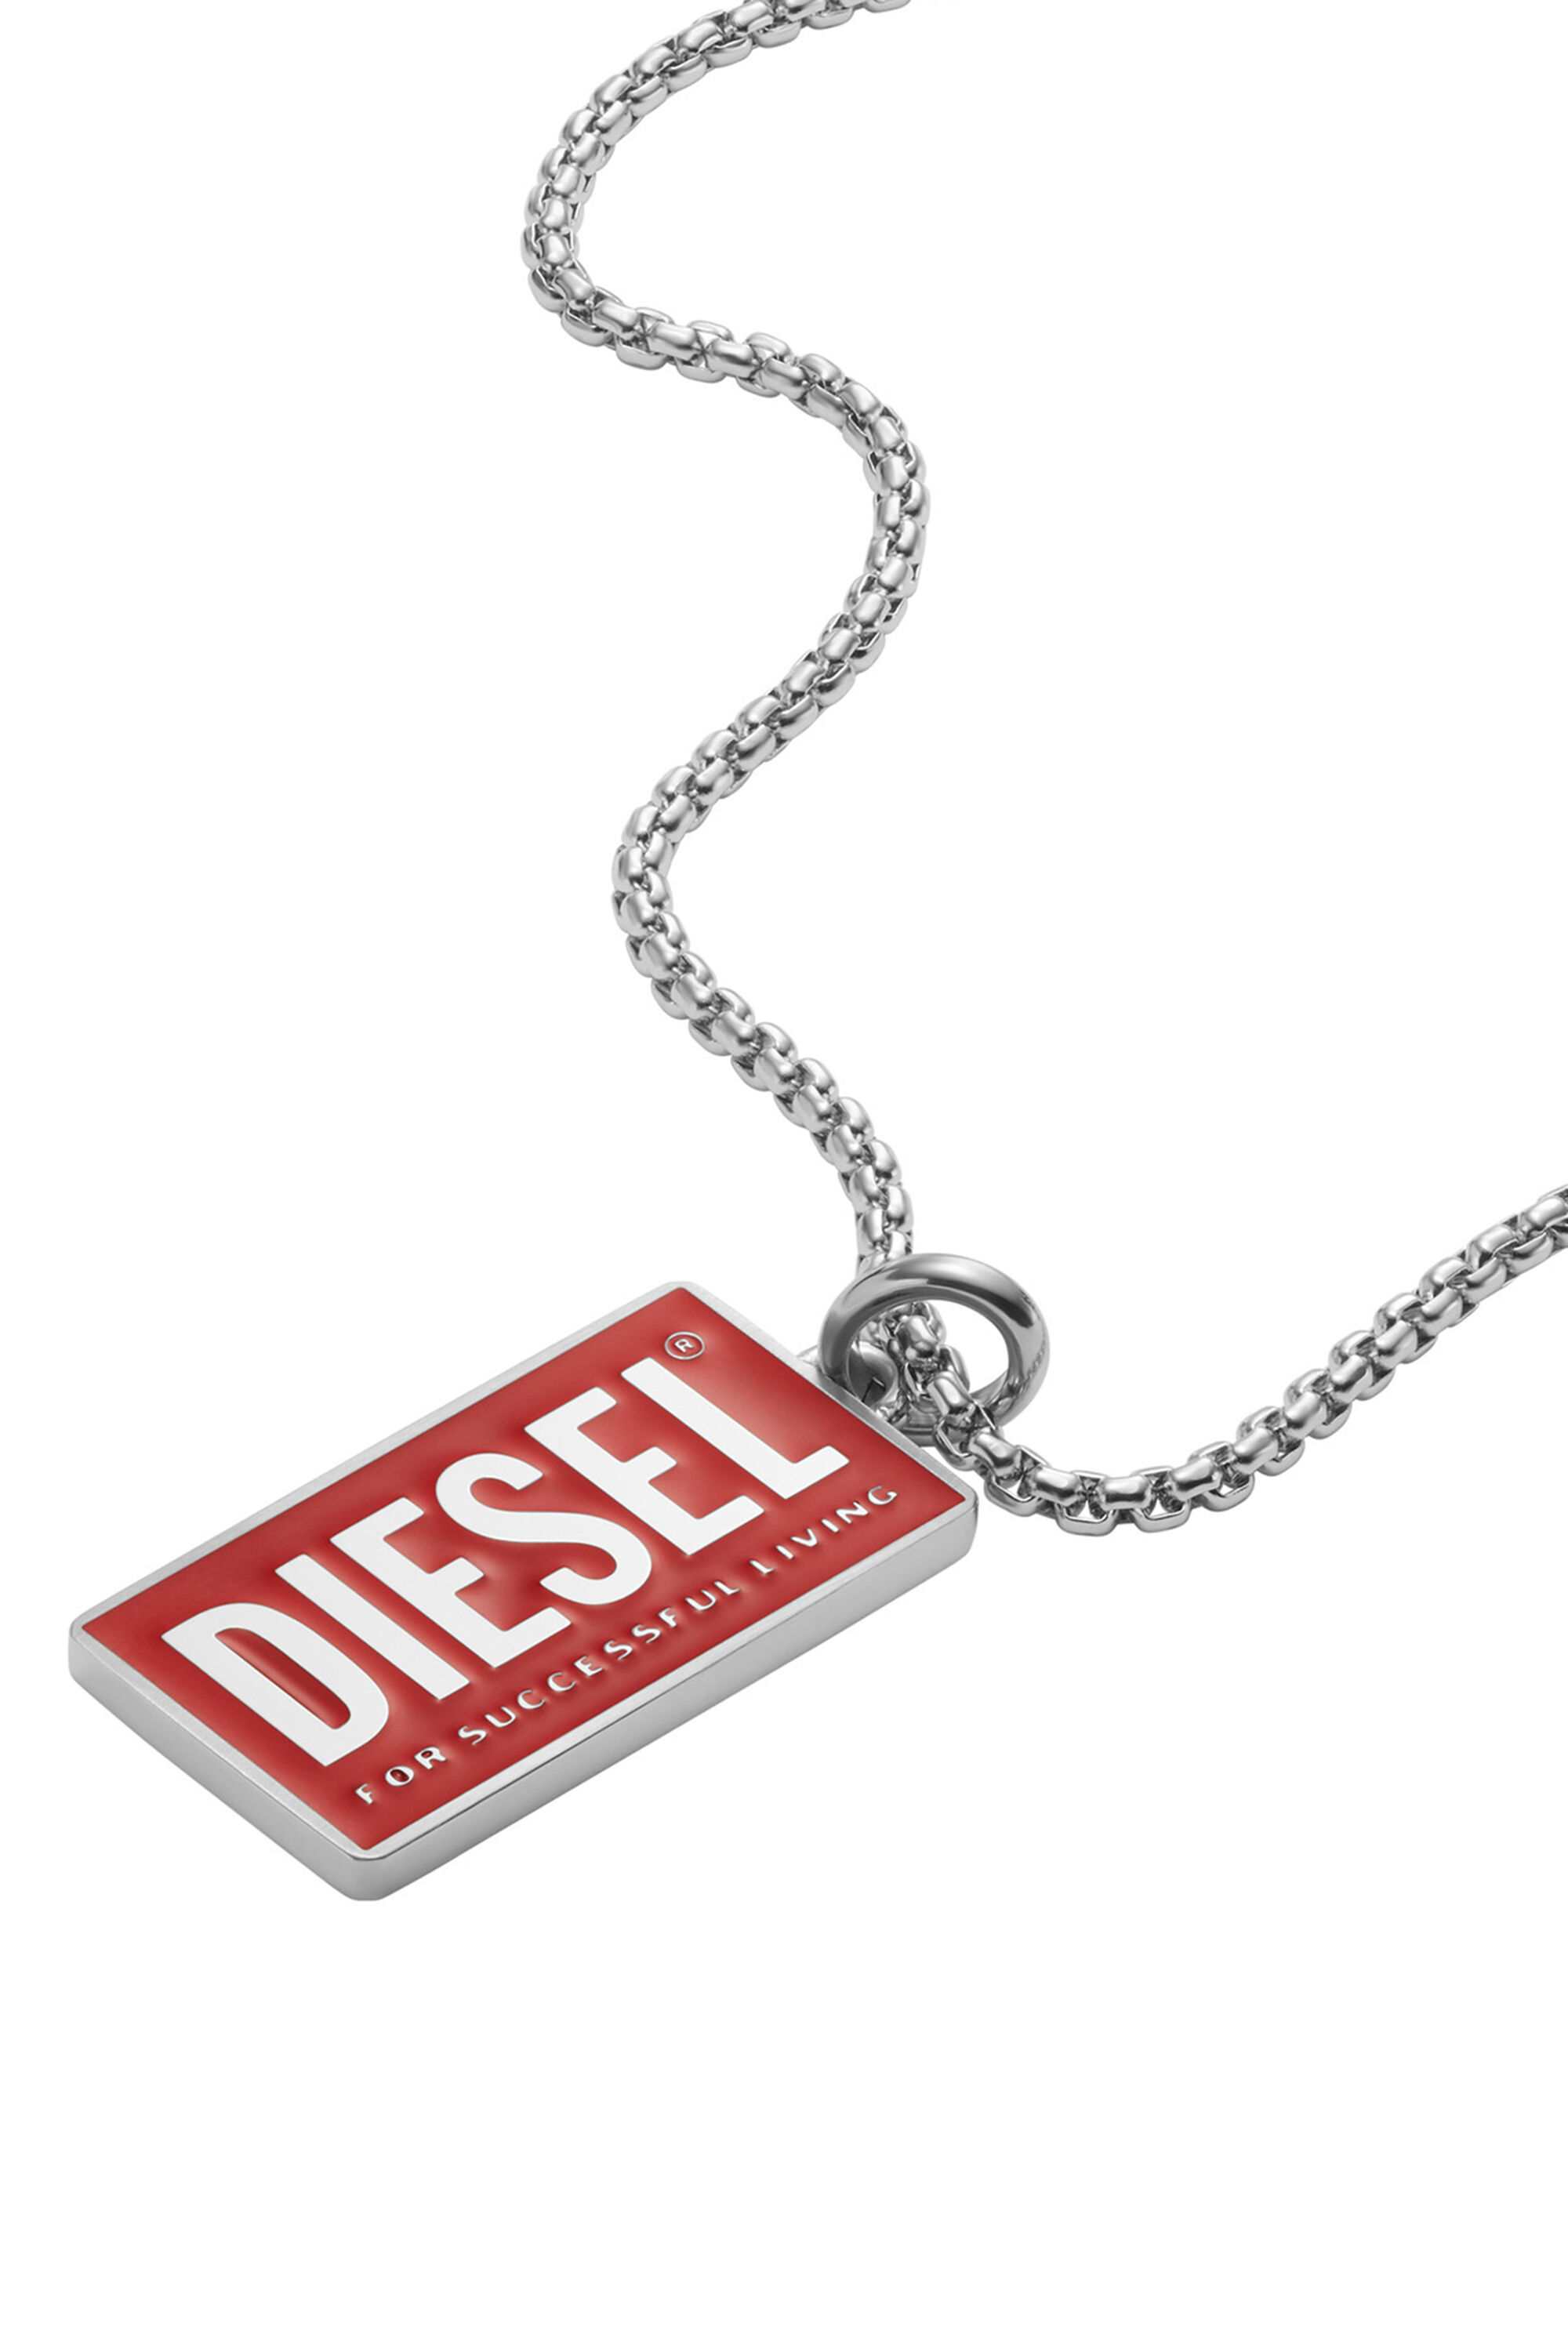 Diesel - DX1368, Red - Image 1